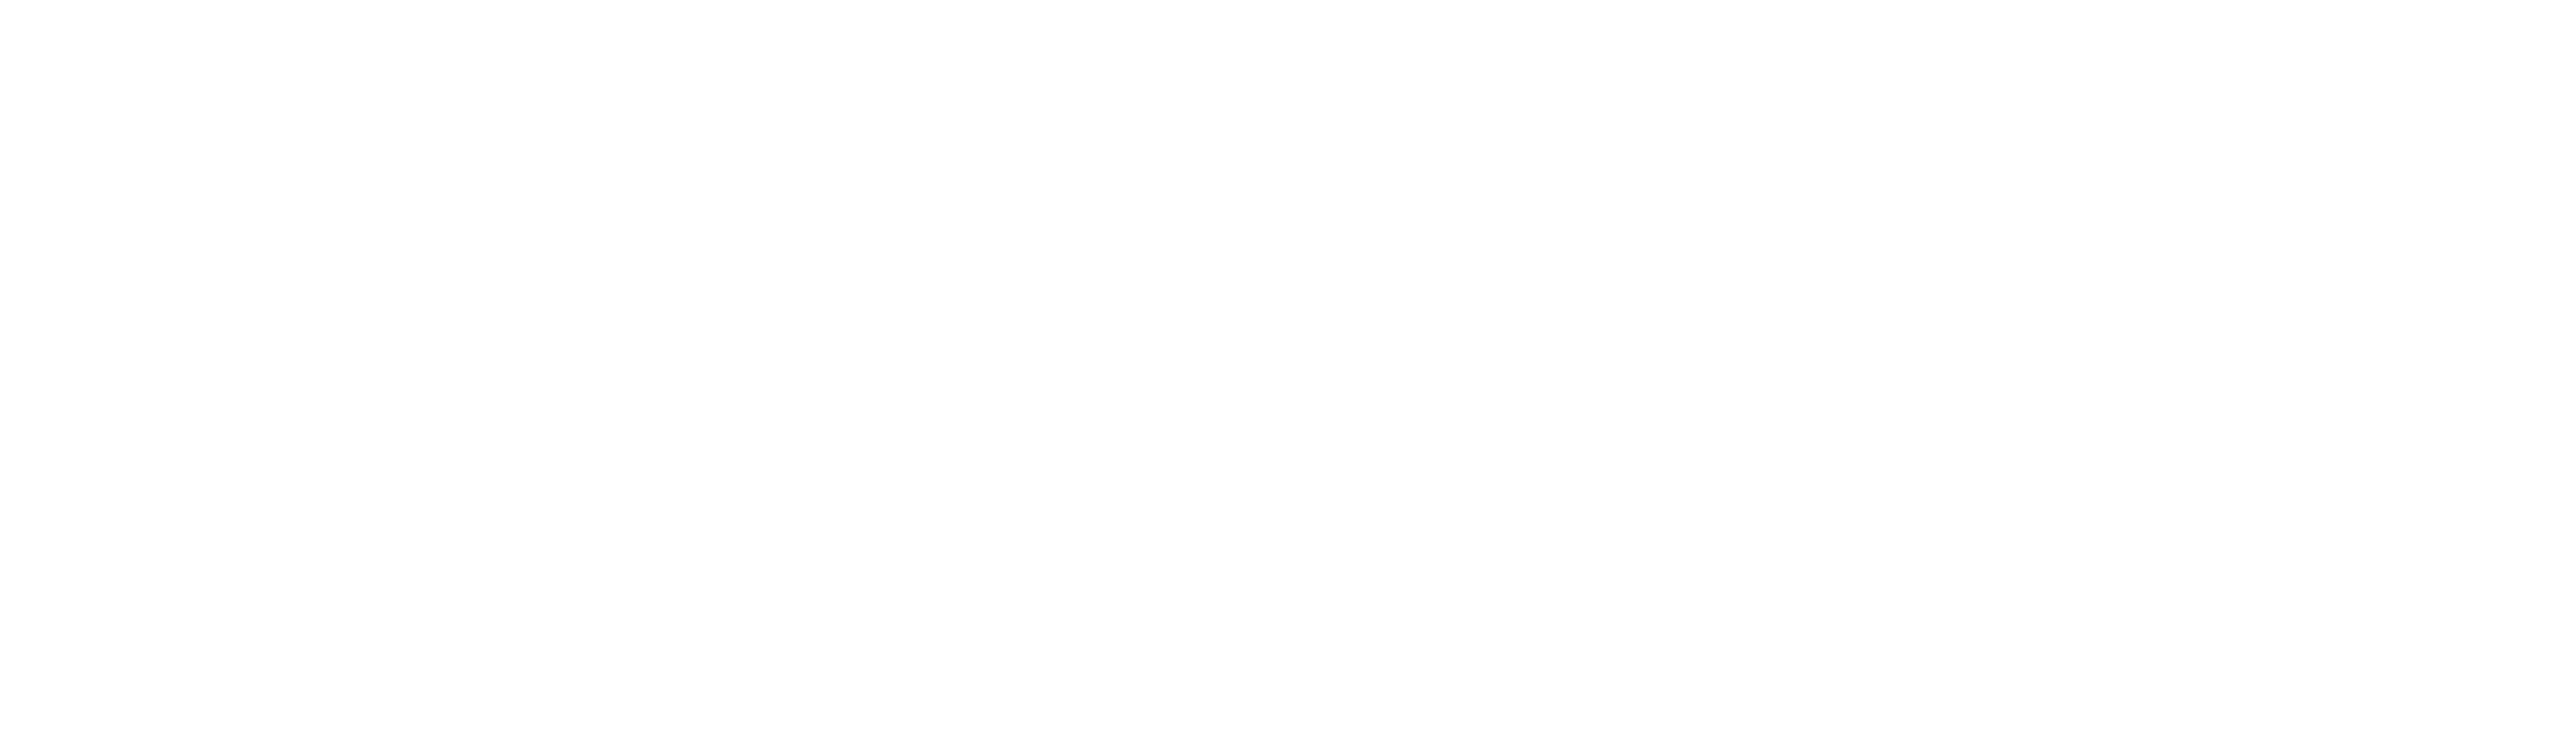 คลินิกโคราช | Wandee Clinic บริการฉีดฟิลเลอร์ปรับรูปหน้า